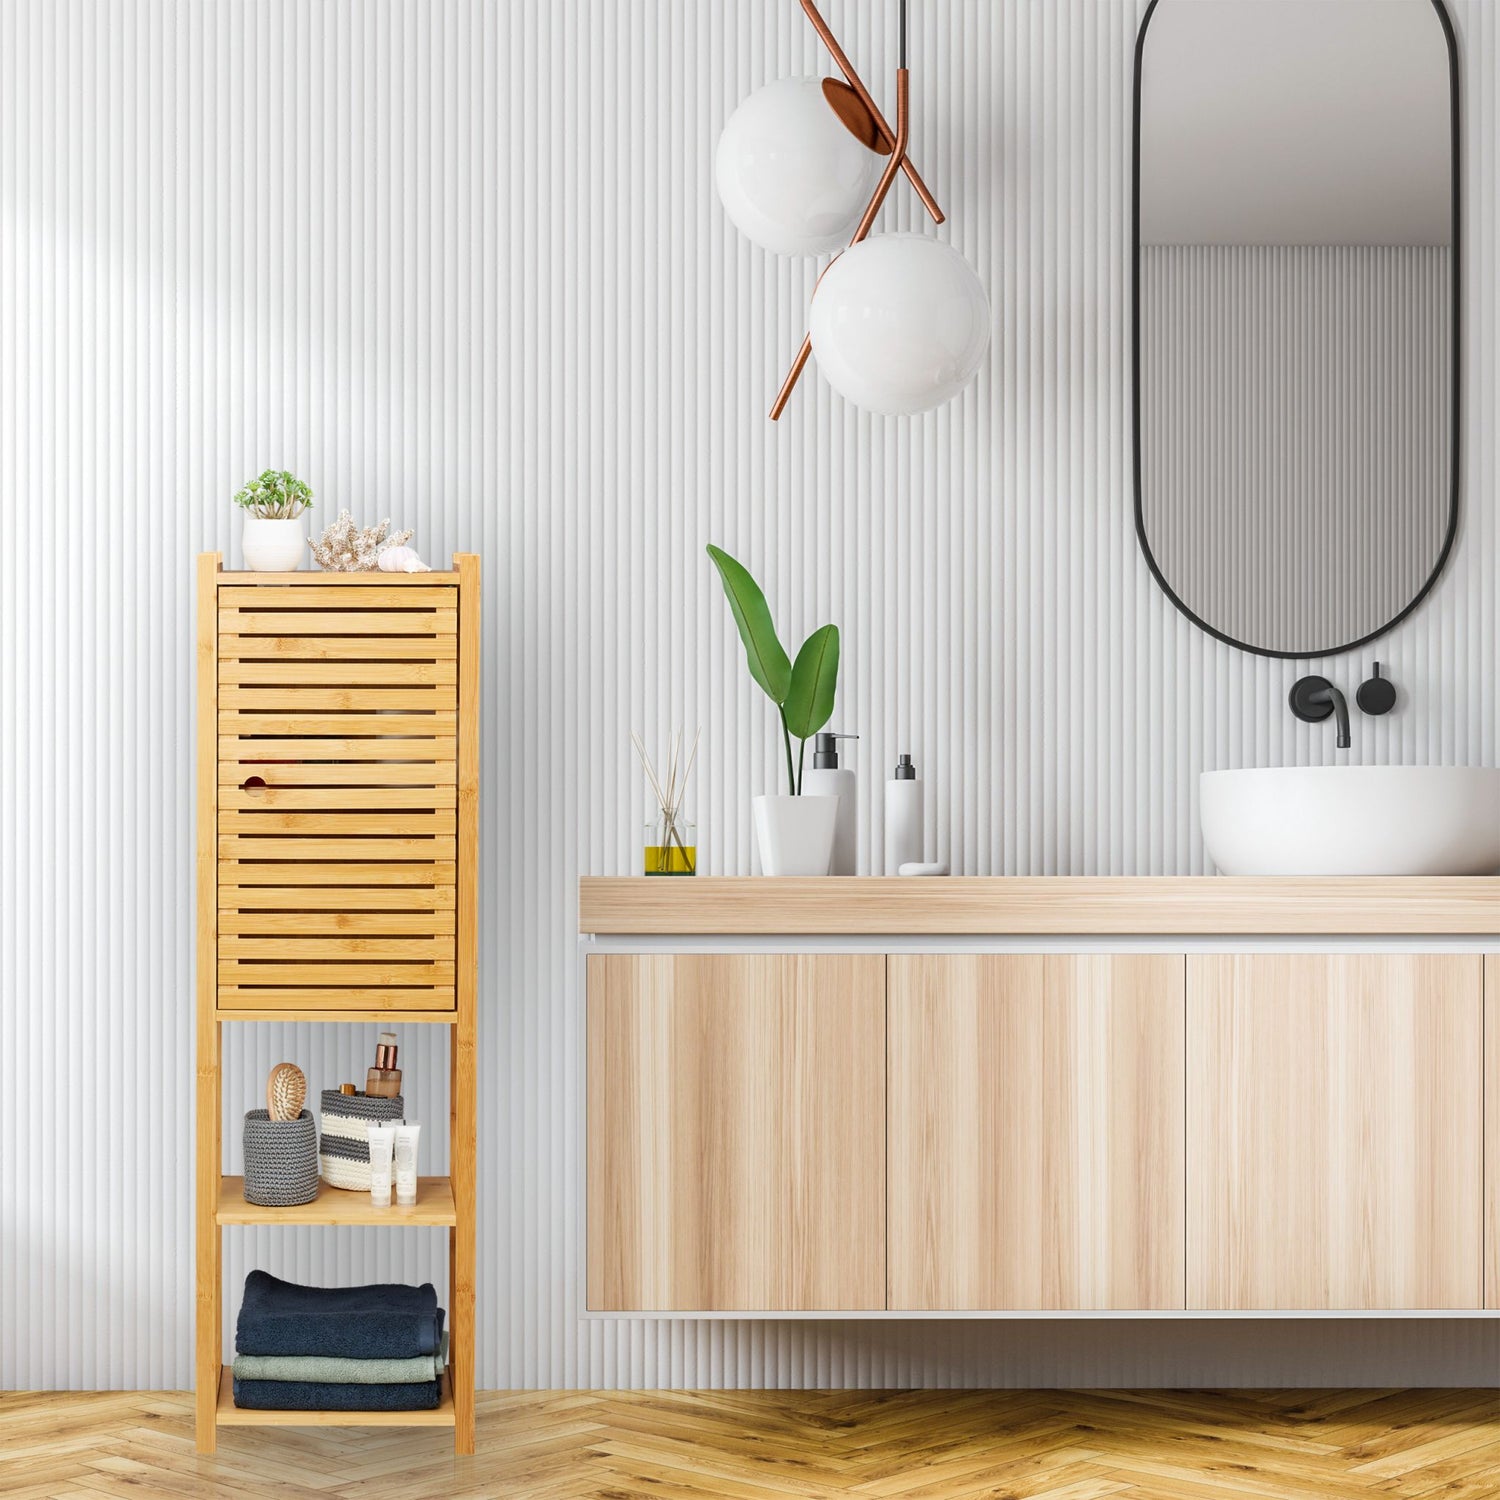 RelaxDays Bamboo Bathroom Cabinet with Door Bamboo Bathrooms